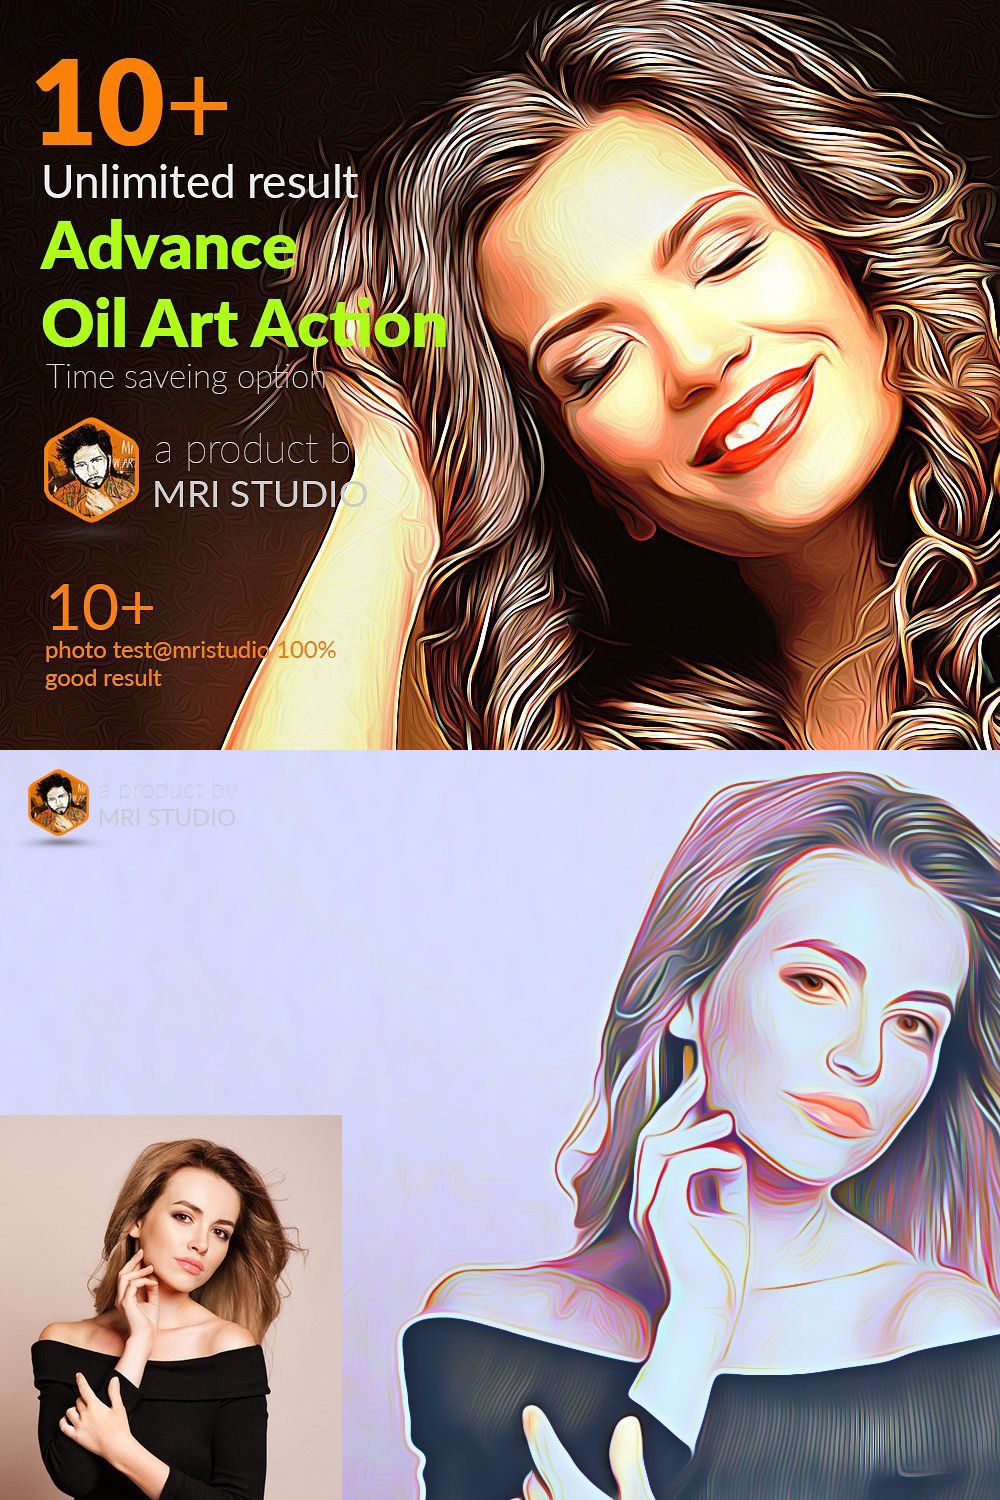 Advance Oil Art Action pinterest preview image.